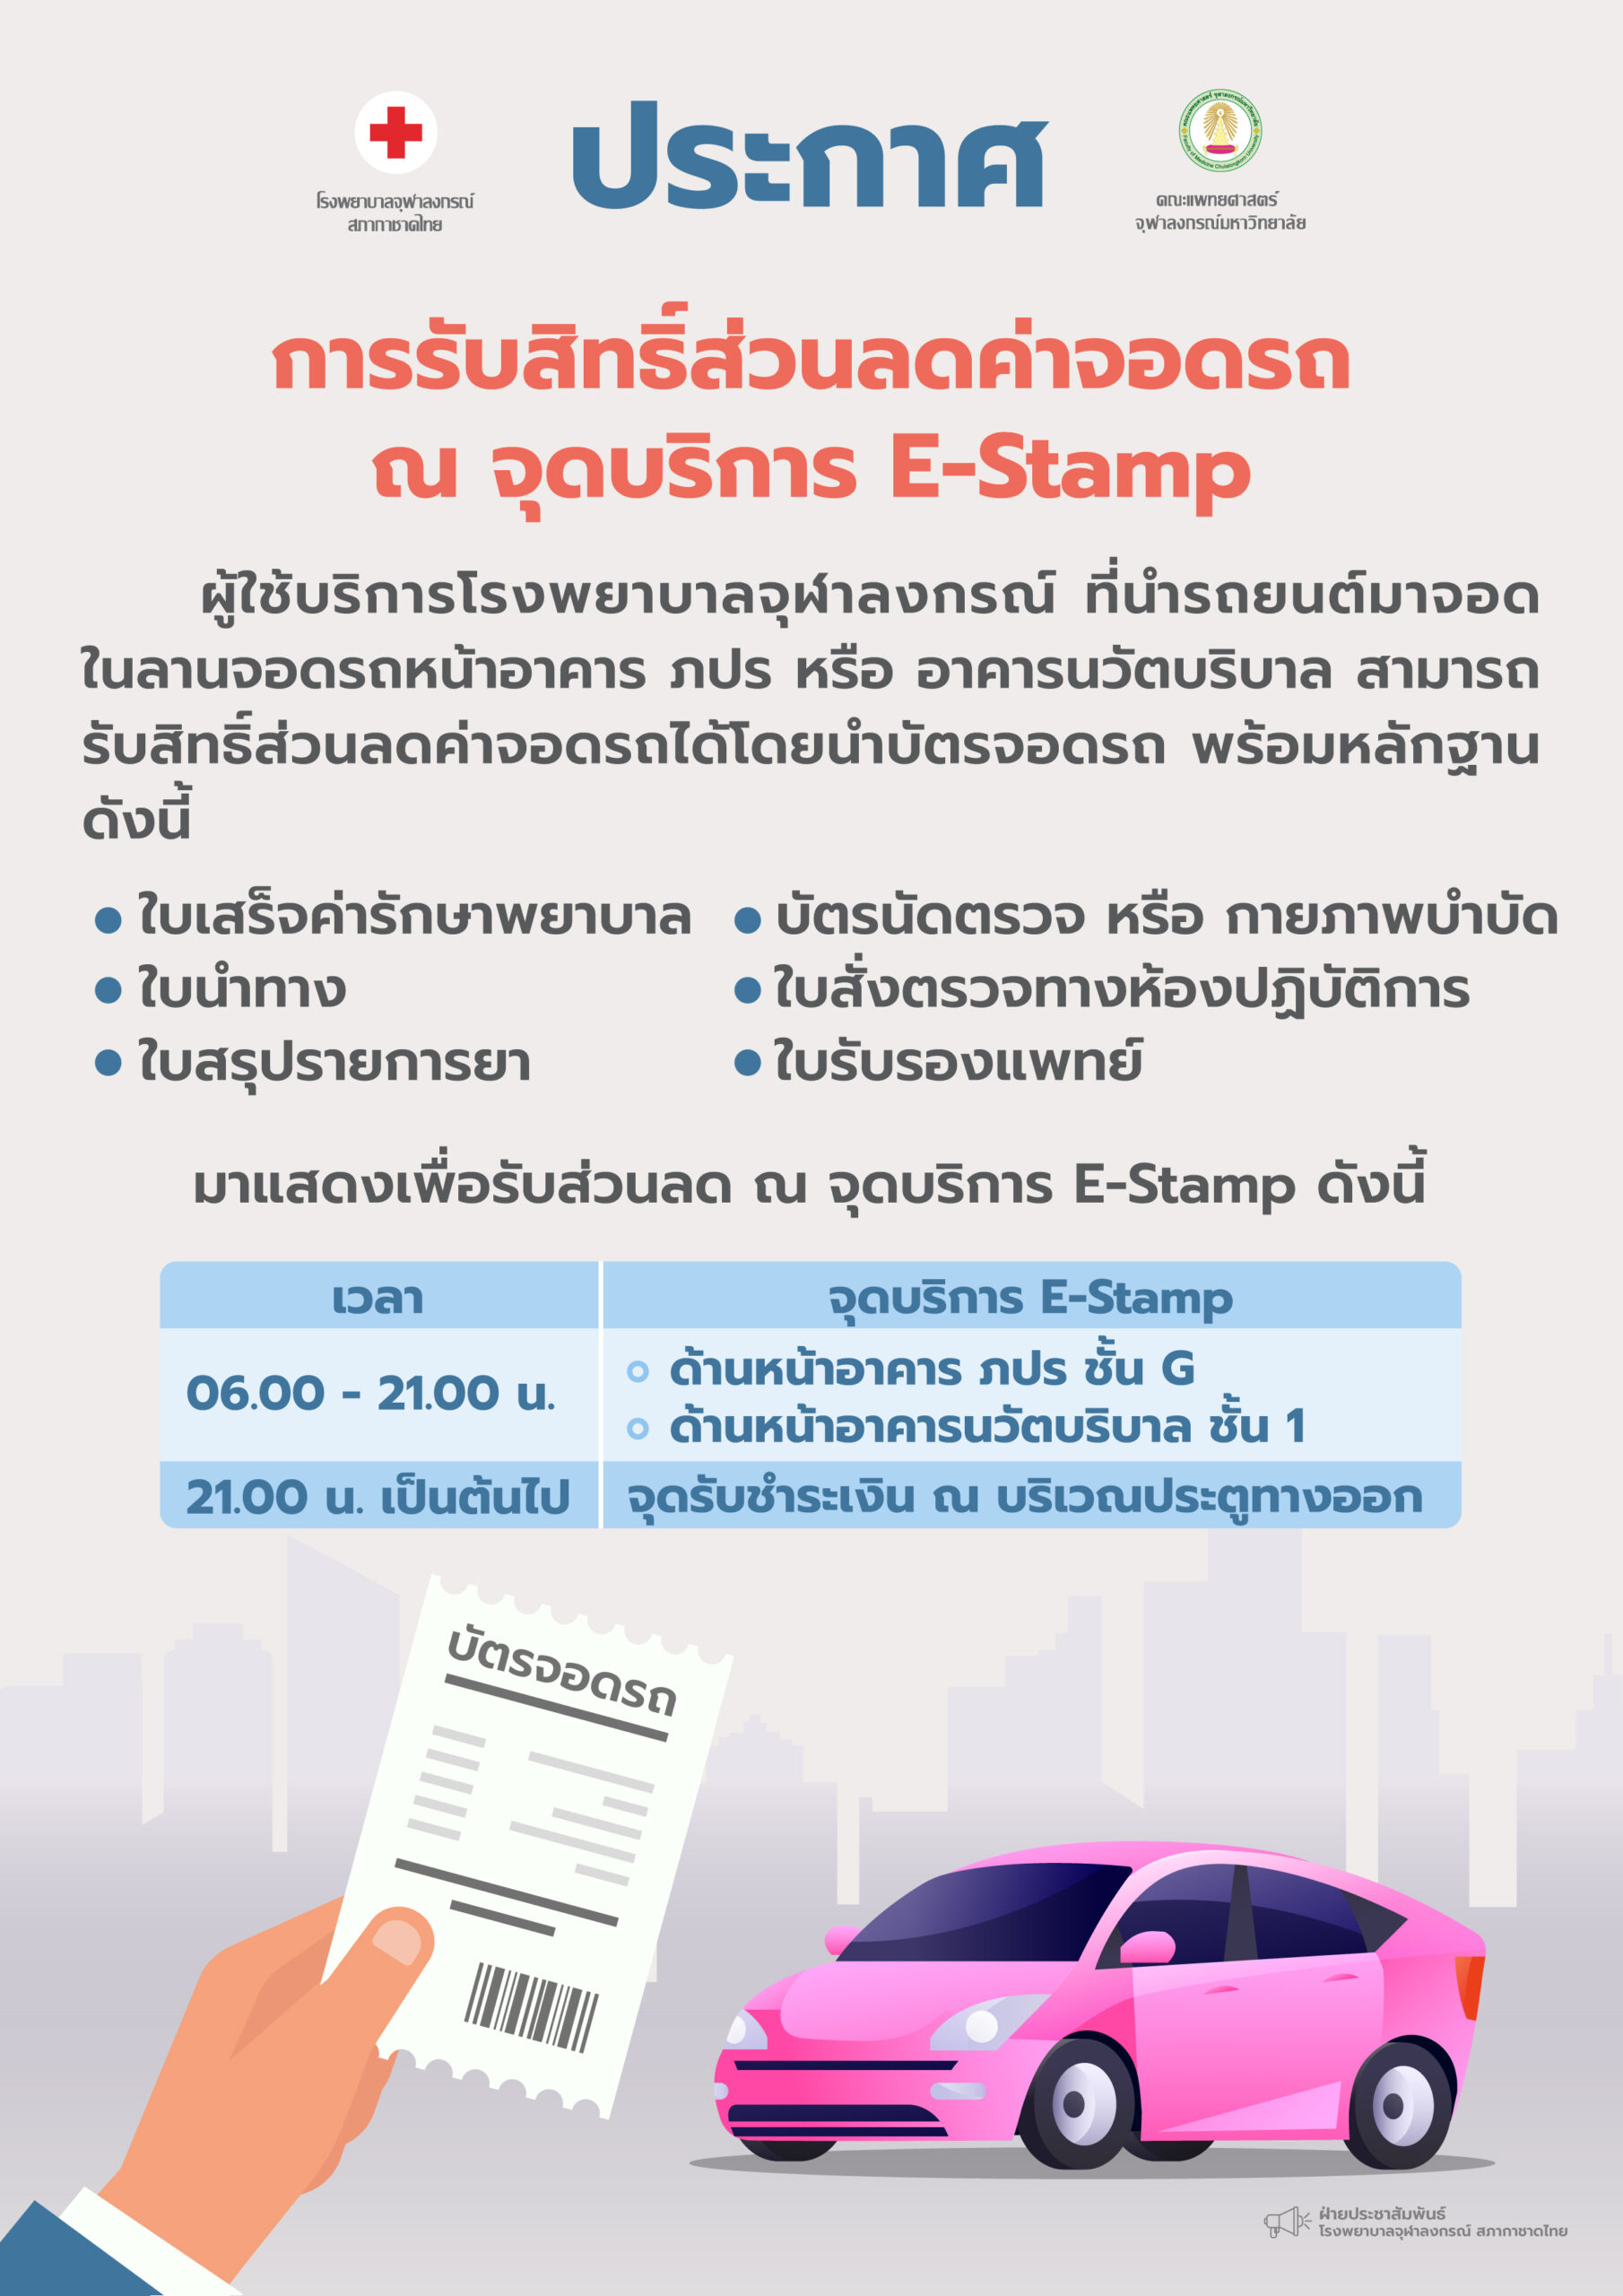 การรับสิทธิ์ส่วนลดค่าจอดรถ ณ จุดบริการ E-Stamp